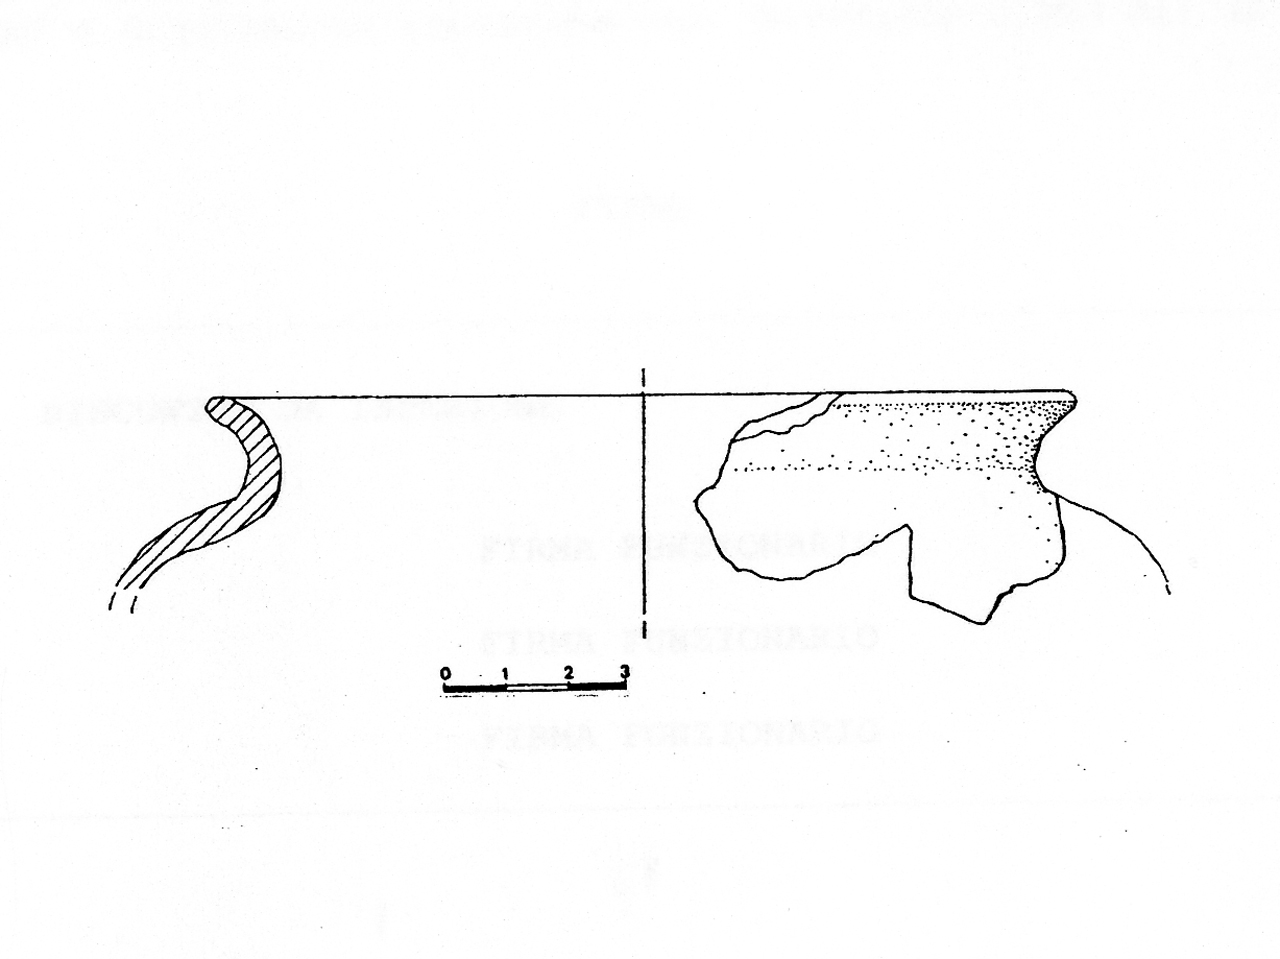 orlo di olla - Locale romanizzato (IV-VII d.C)